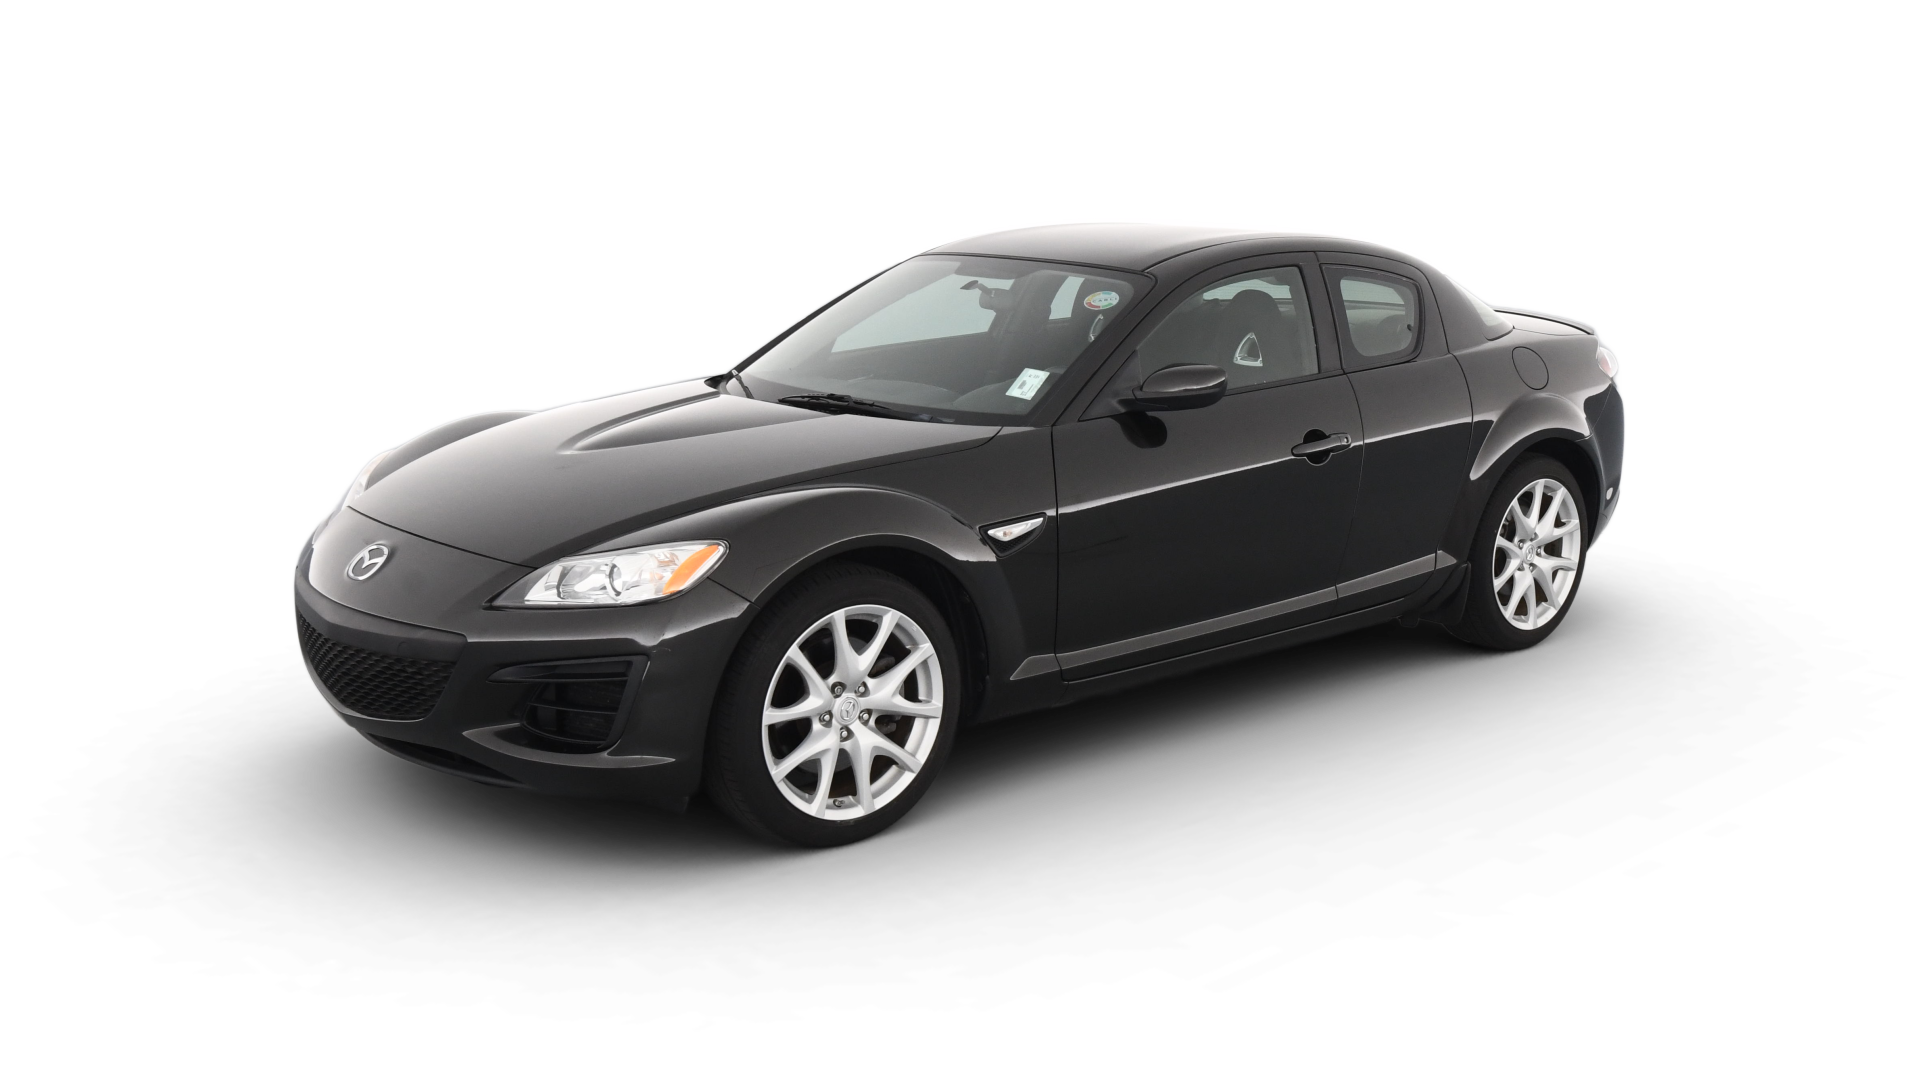 Mazda RX-8 model image.